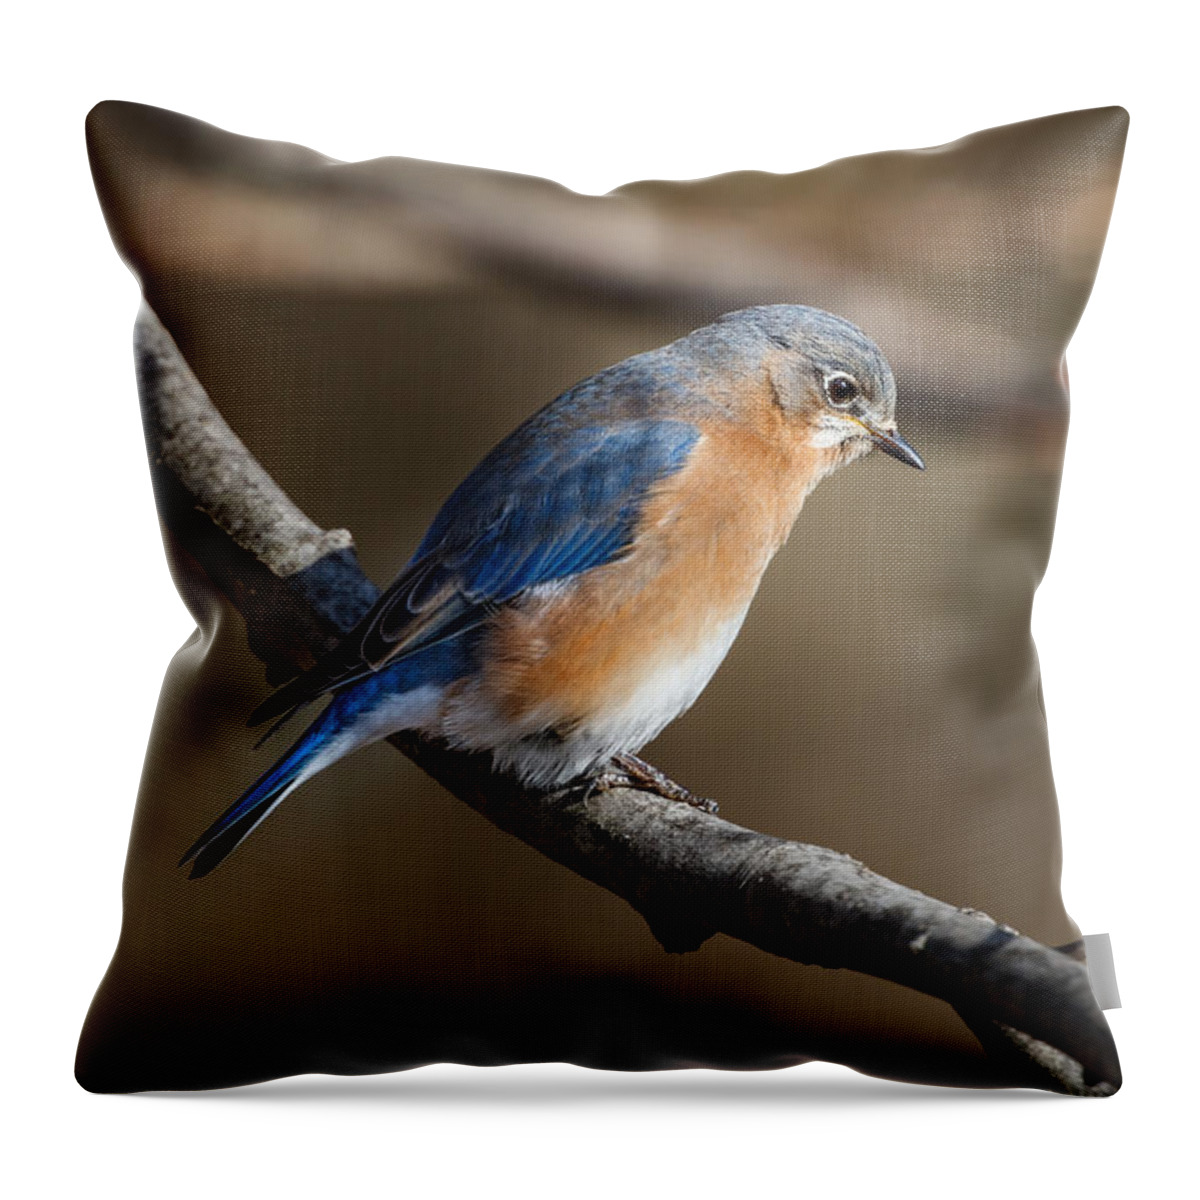 Winter Throw Pillow featuring the photograph Winter Blue Bird by Steven Llorca